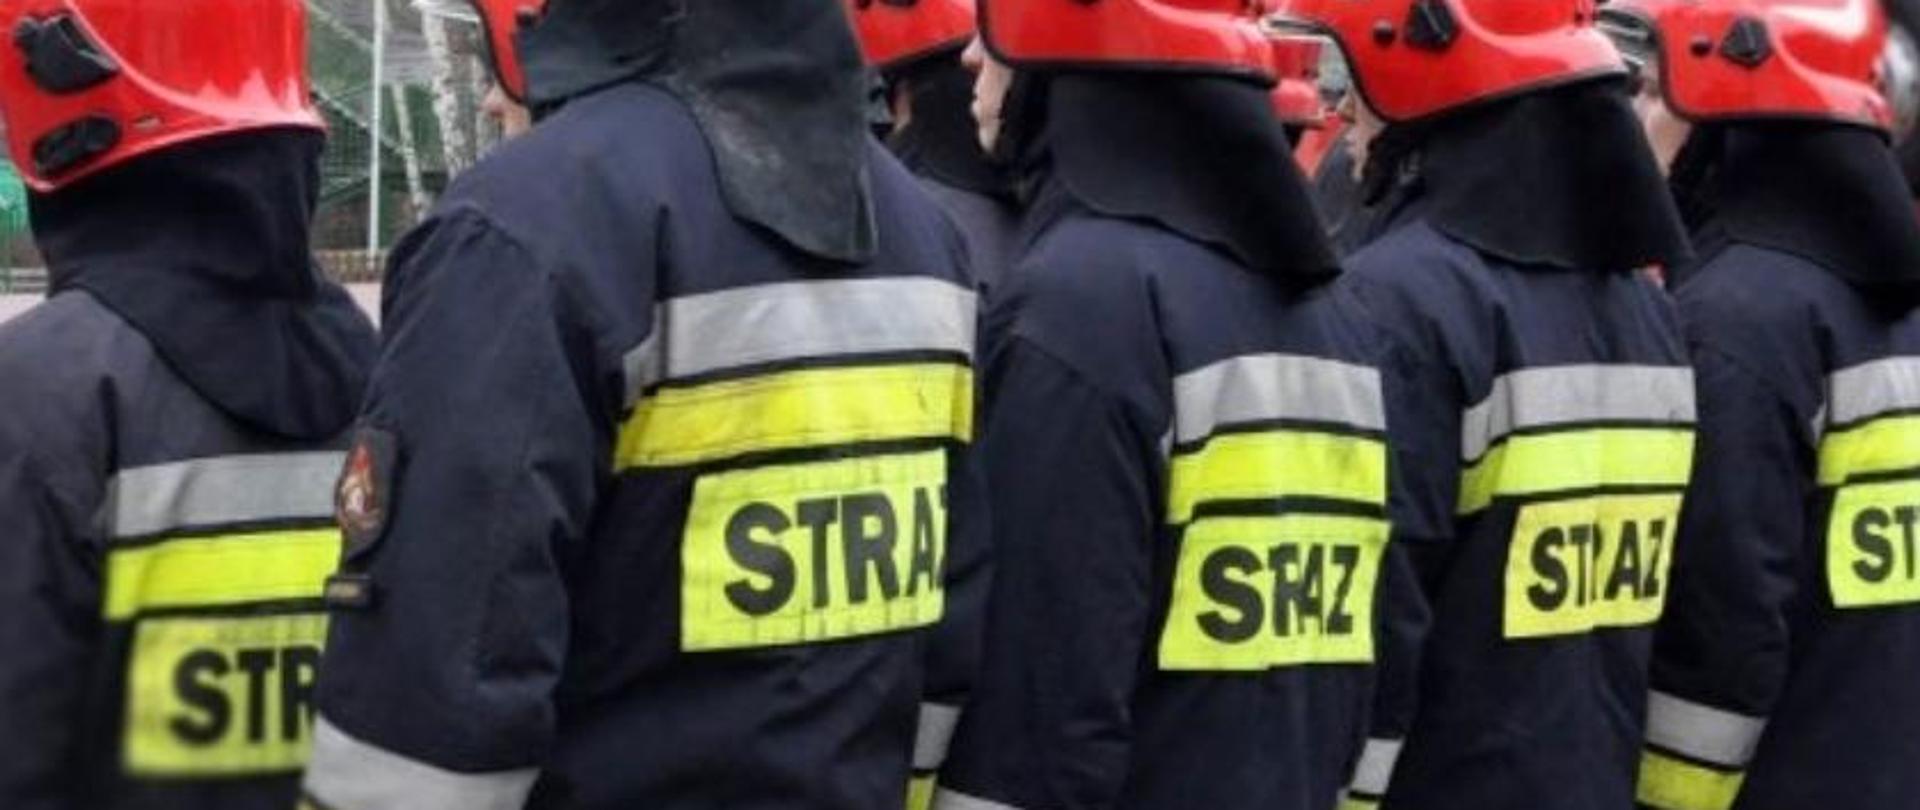 Strażaków OSP stojących w szeregu, odwróconych tyłem.